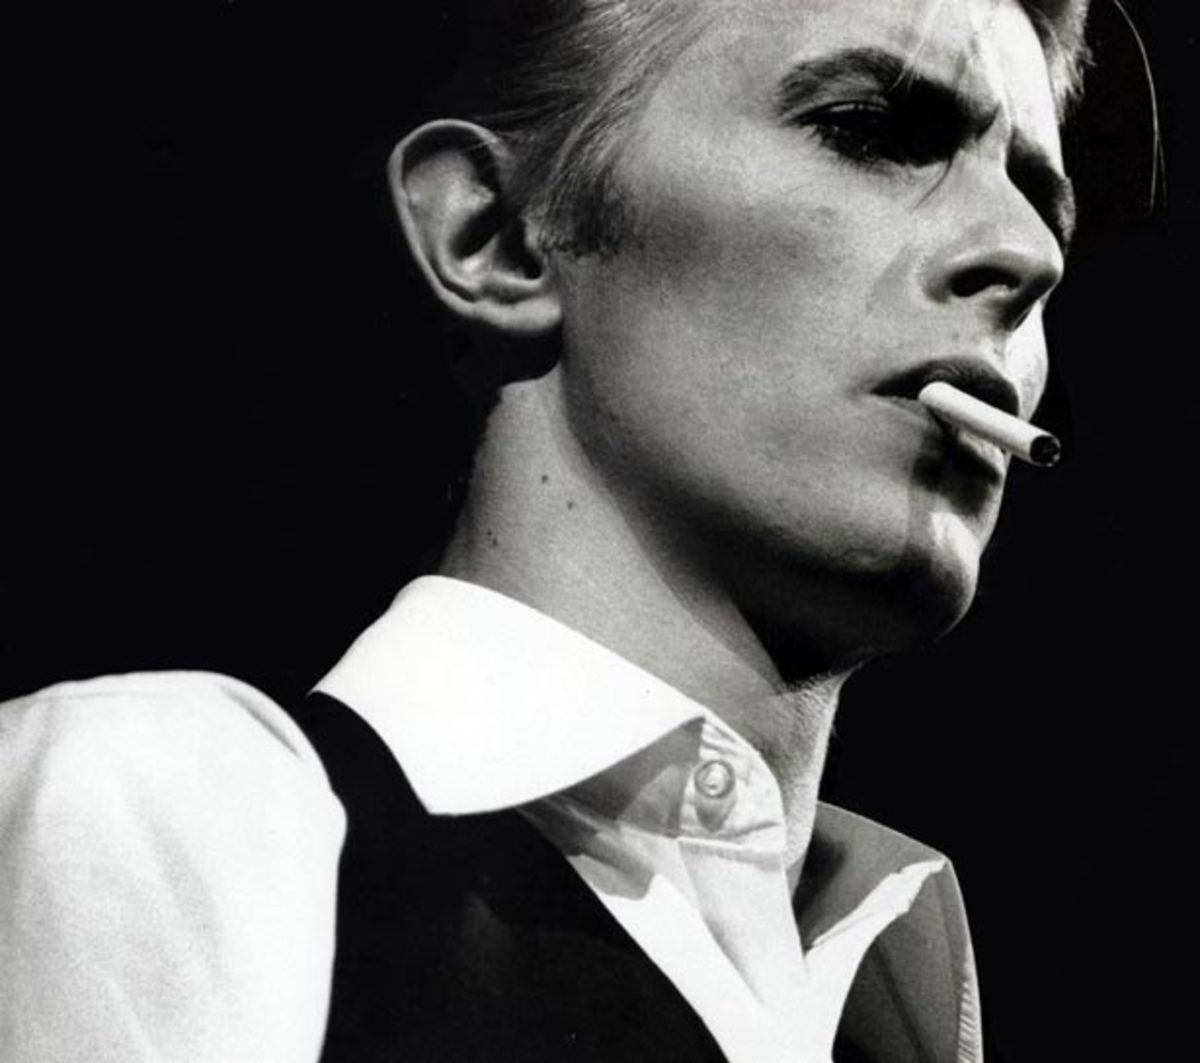 Stream: David Bowie "Golden Years" Tim Fuchs Edit